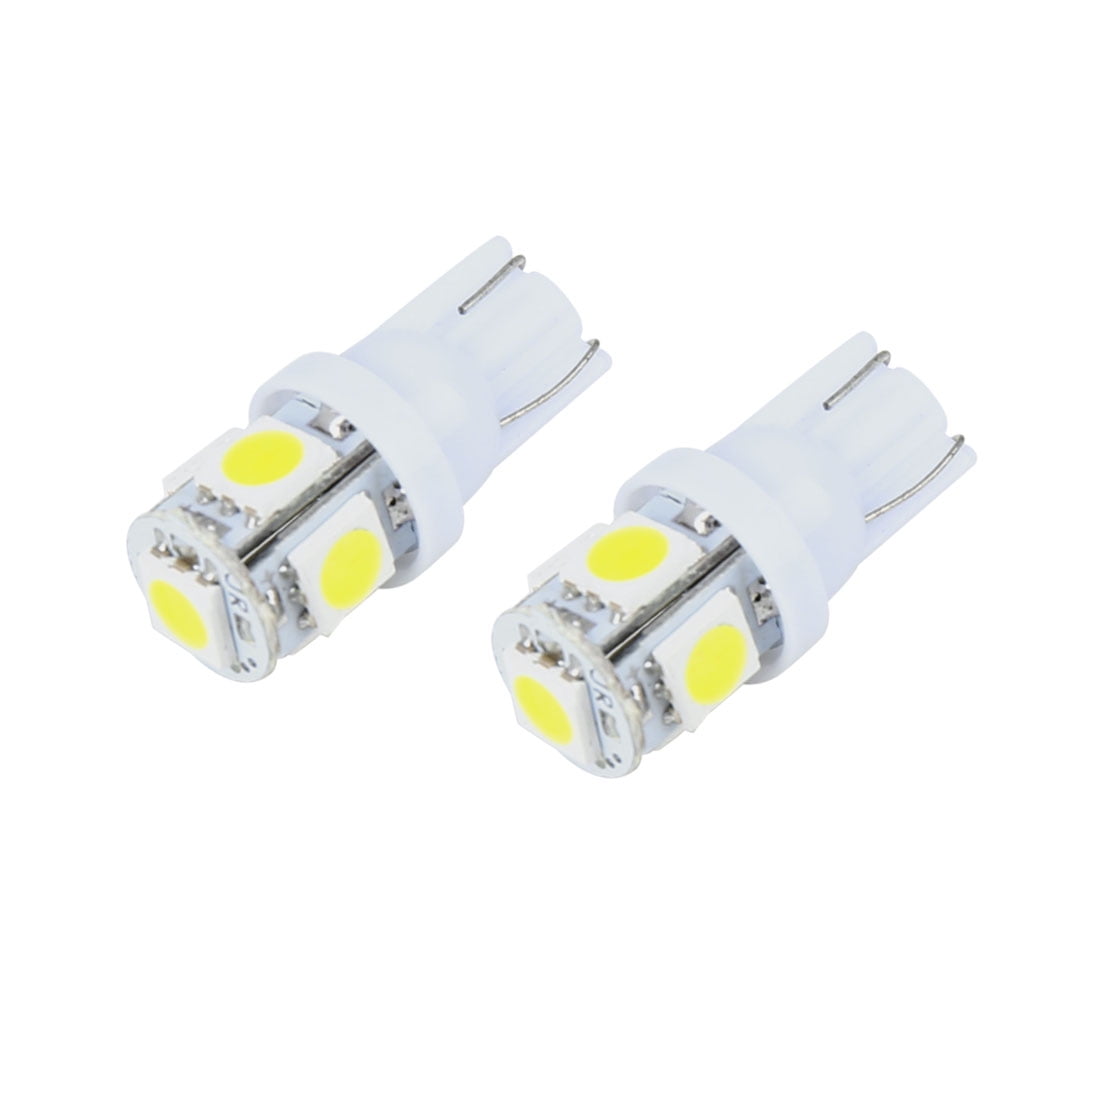 2pcs T10 White LED Width Lamp Daytime Fog Lights Bulb License Plate Light 6000K